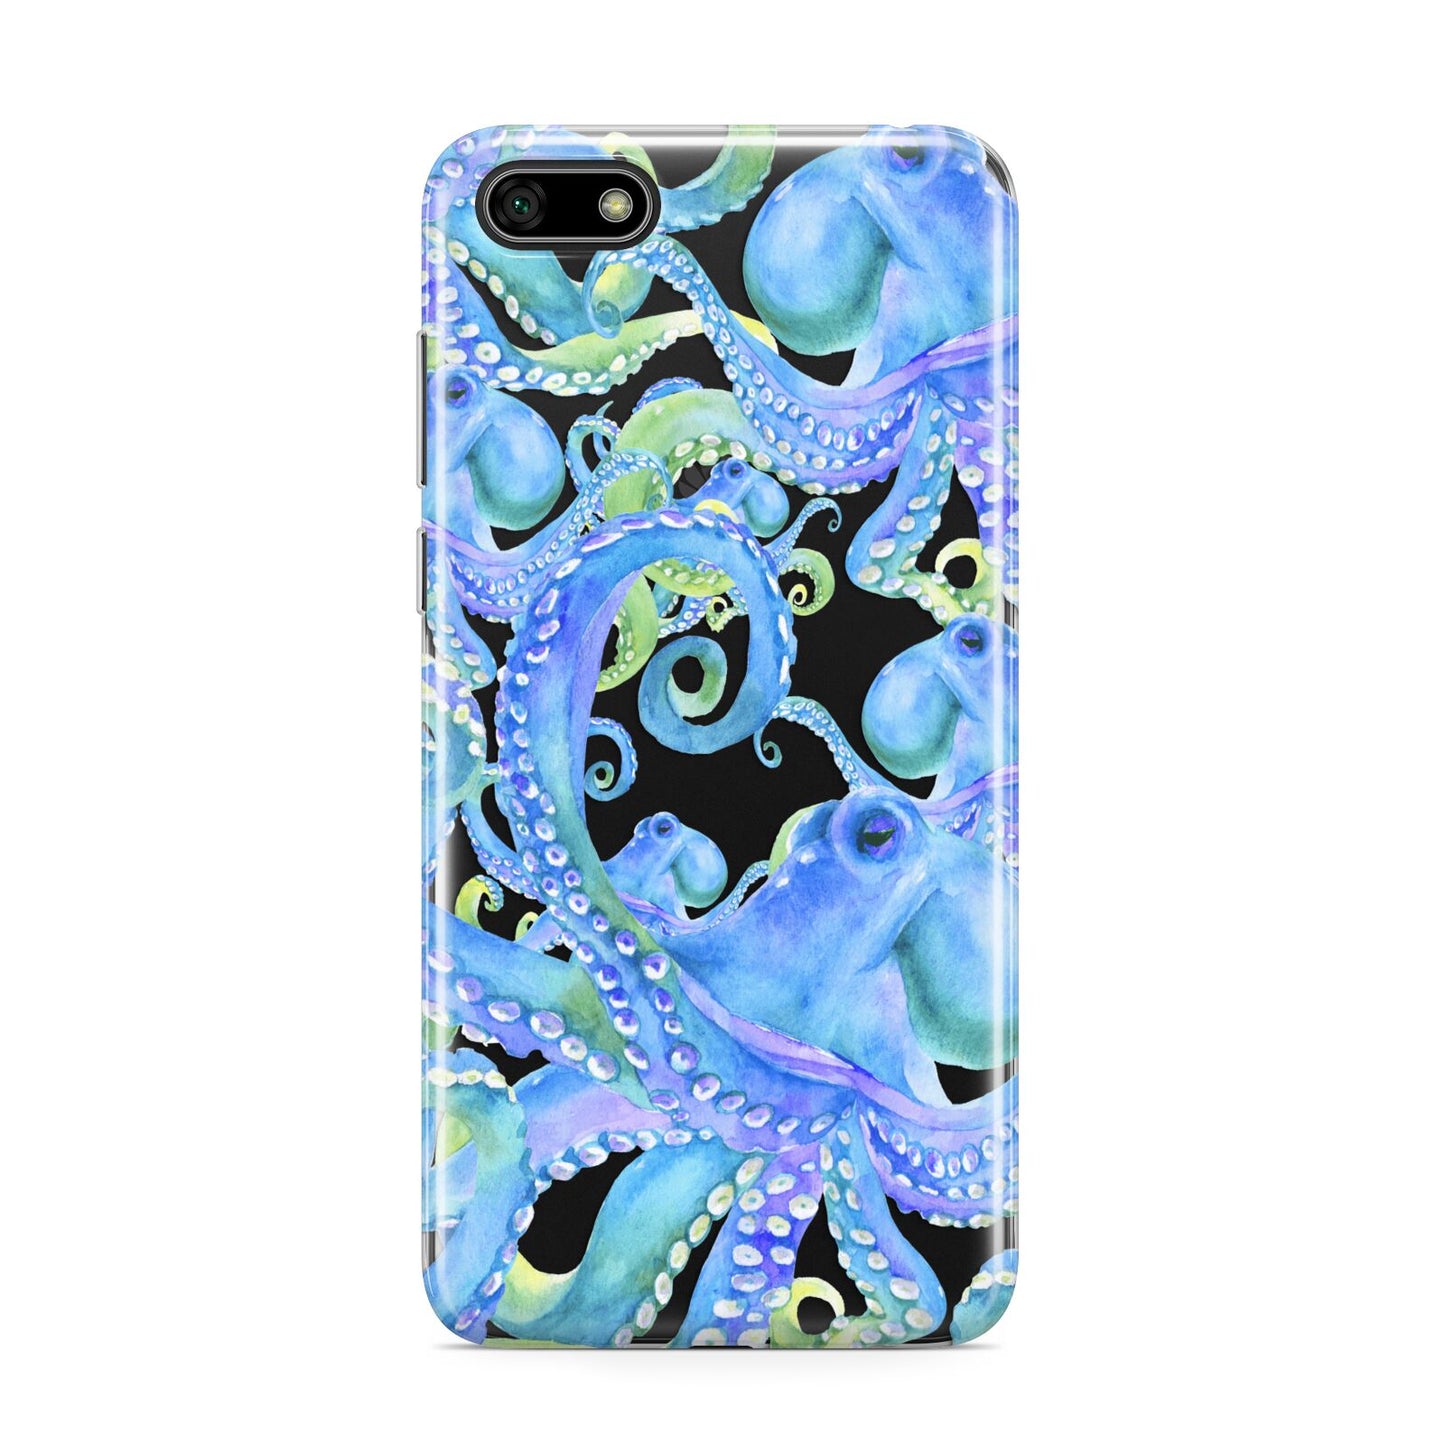 Octopus Huawei Y5 Prime 2018 Phone Case